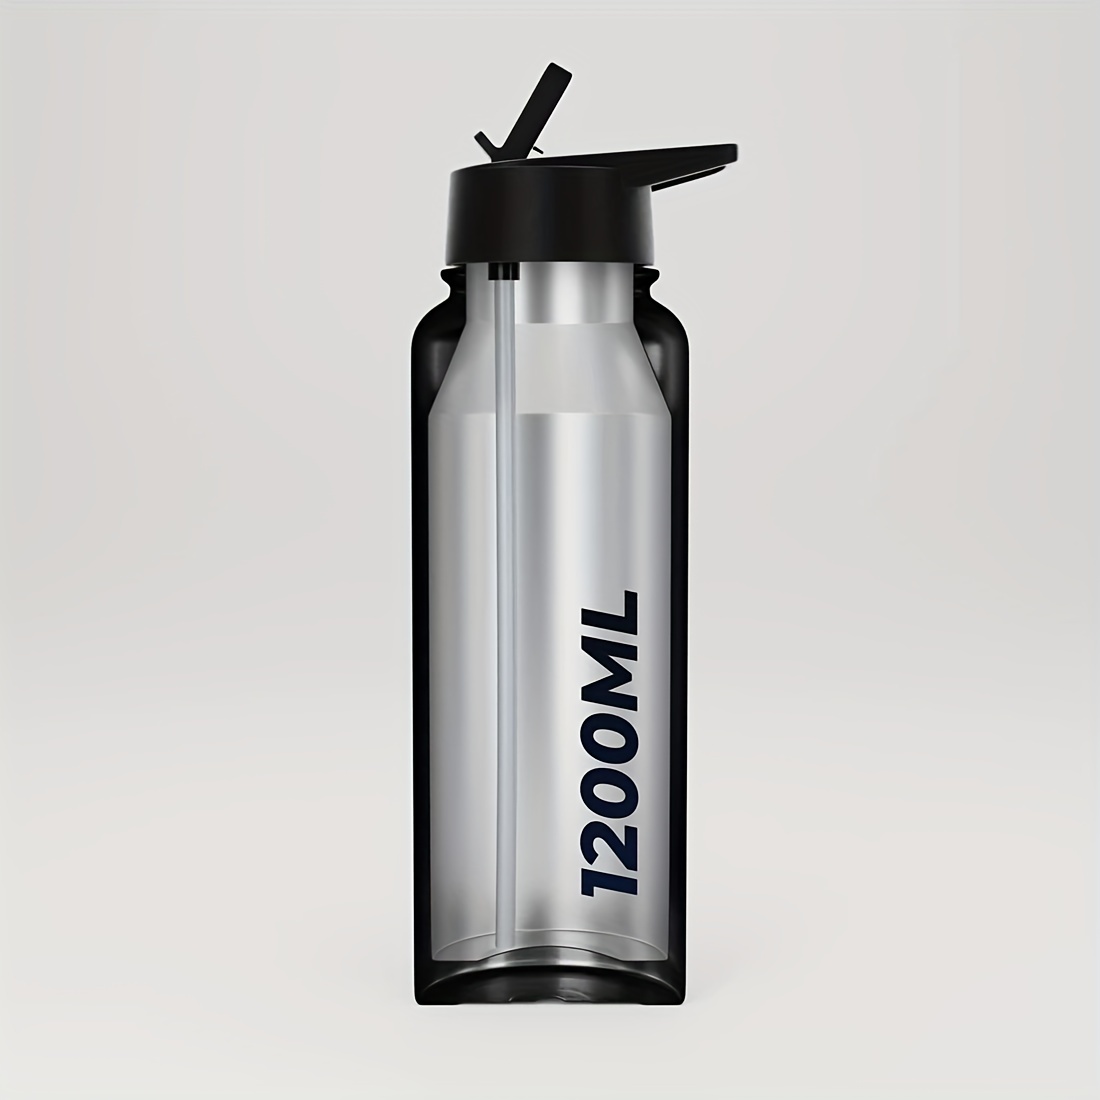 JOOLA 40 oz Water Bottle Stainless Steel - Sweat Proof Insulated Water  Bottle - Leak Proof Spout Lid…See more JOOLA 40 oz Water Bottle Stainless  Steel